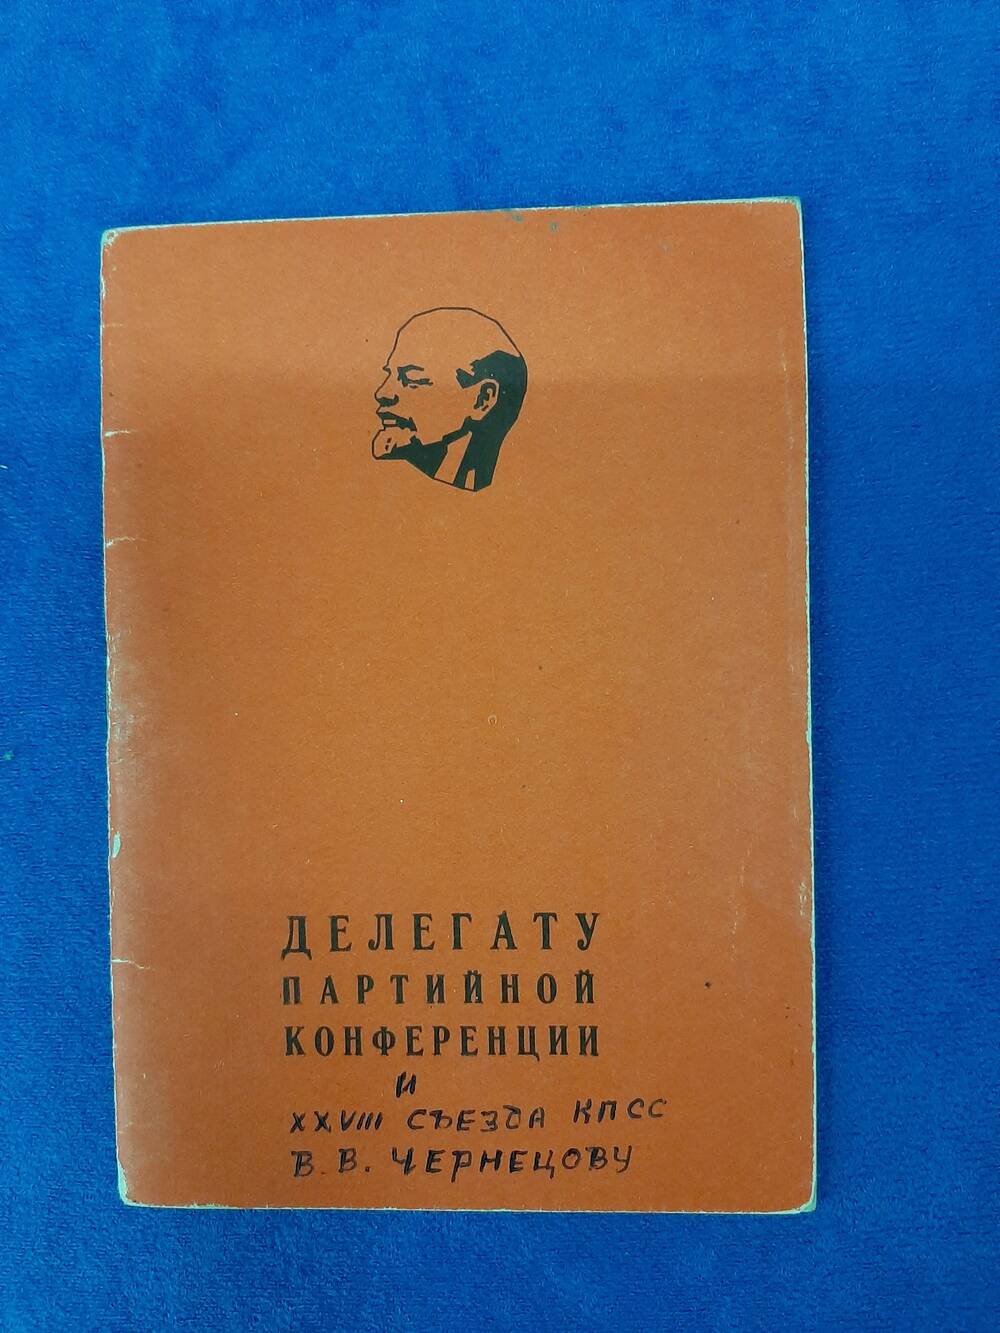 Блокнот  делегата партийной конференции 28 съезда КПСС В.В. Чернецова.